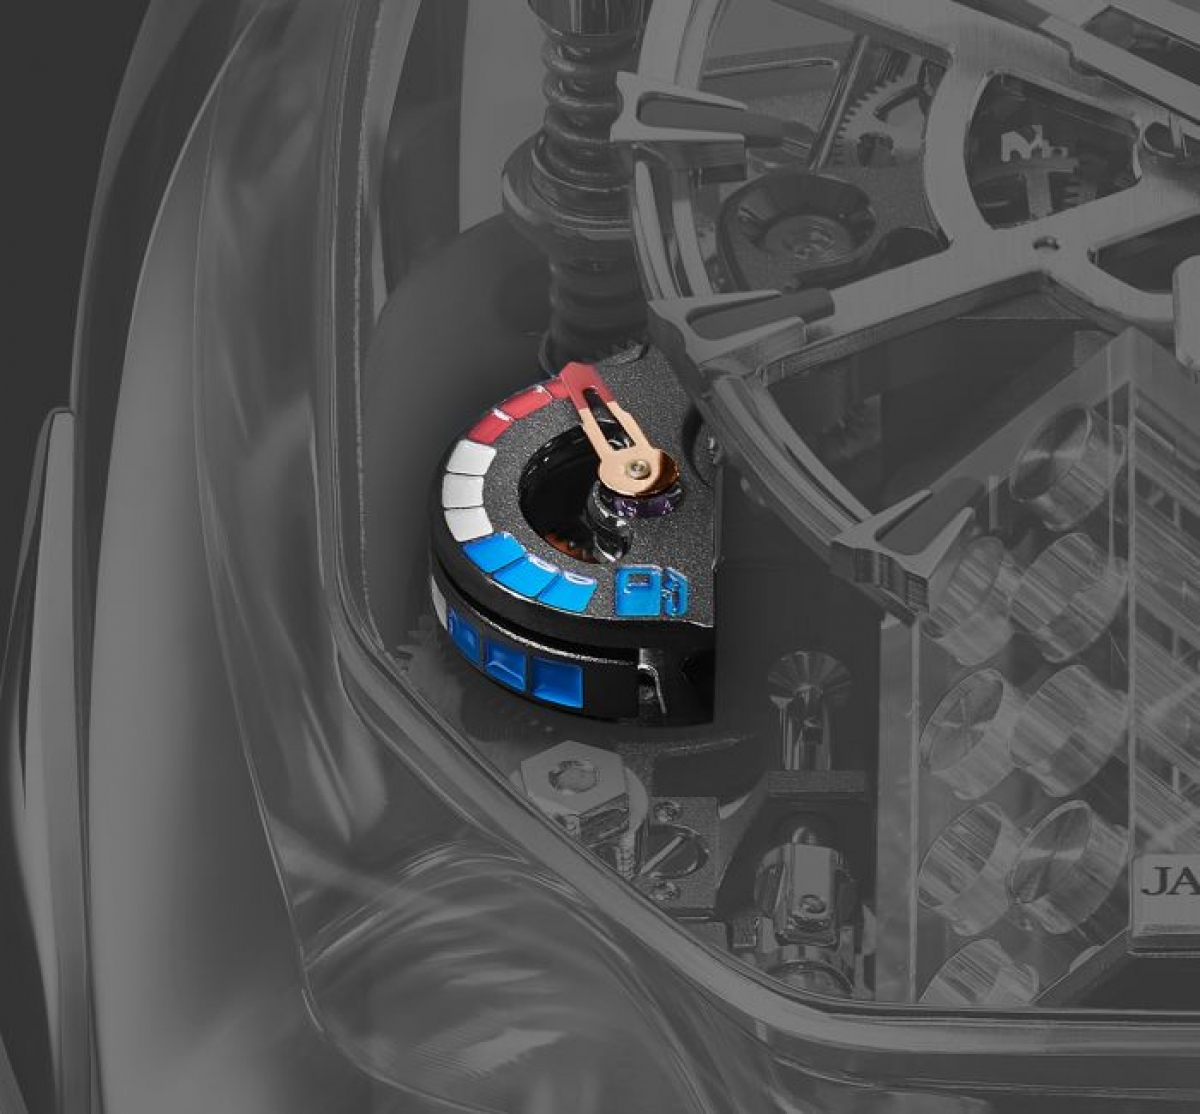 Chiêm ngưỡng mẫu đồng hồ giá 1,5 triệu USD của Bugatti và Jacob & Co - Ảnh 9.